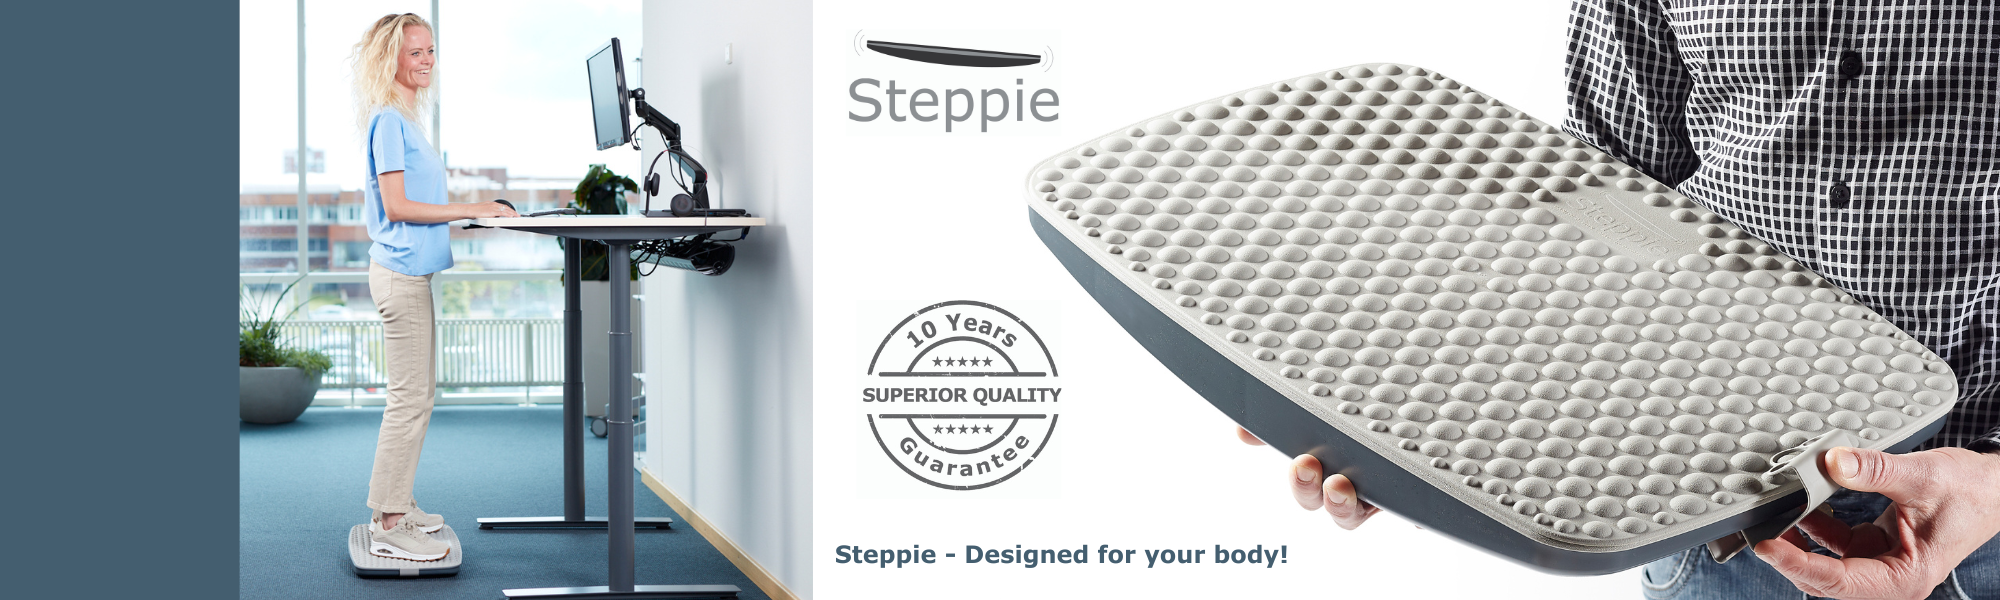 Steppie balancebræt - designed for your body